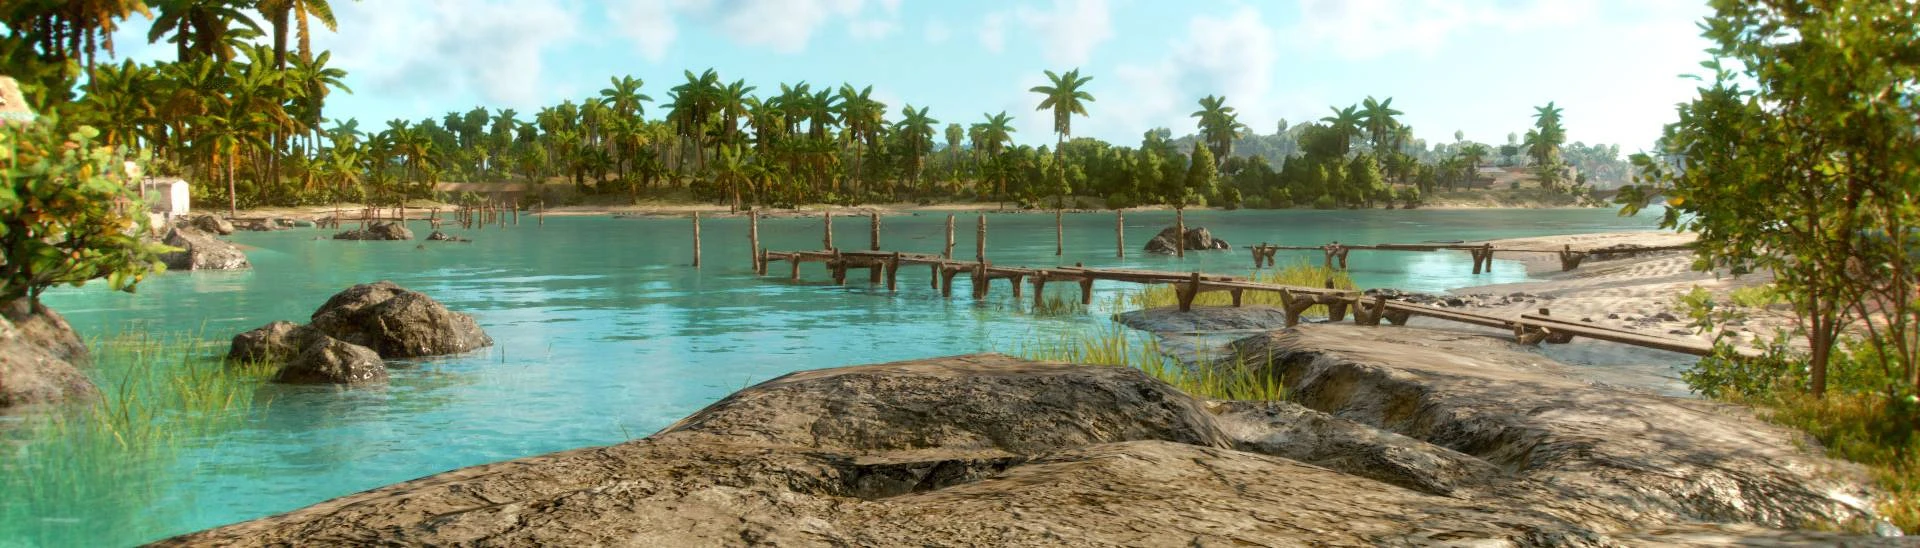 Enhanced Realism mod 1.4.6 addon - Far Cry - ModDB